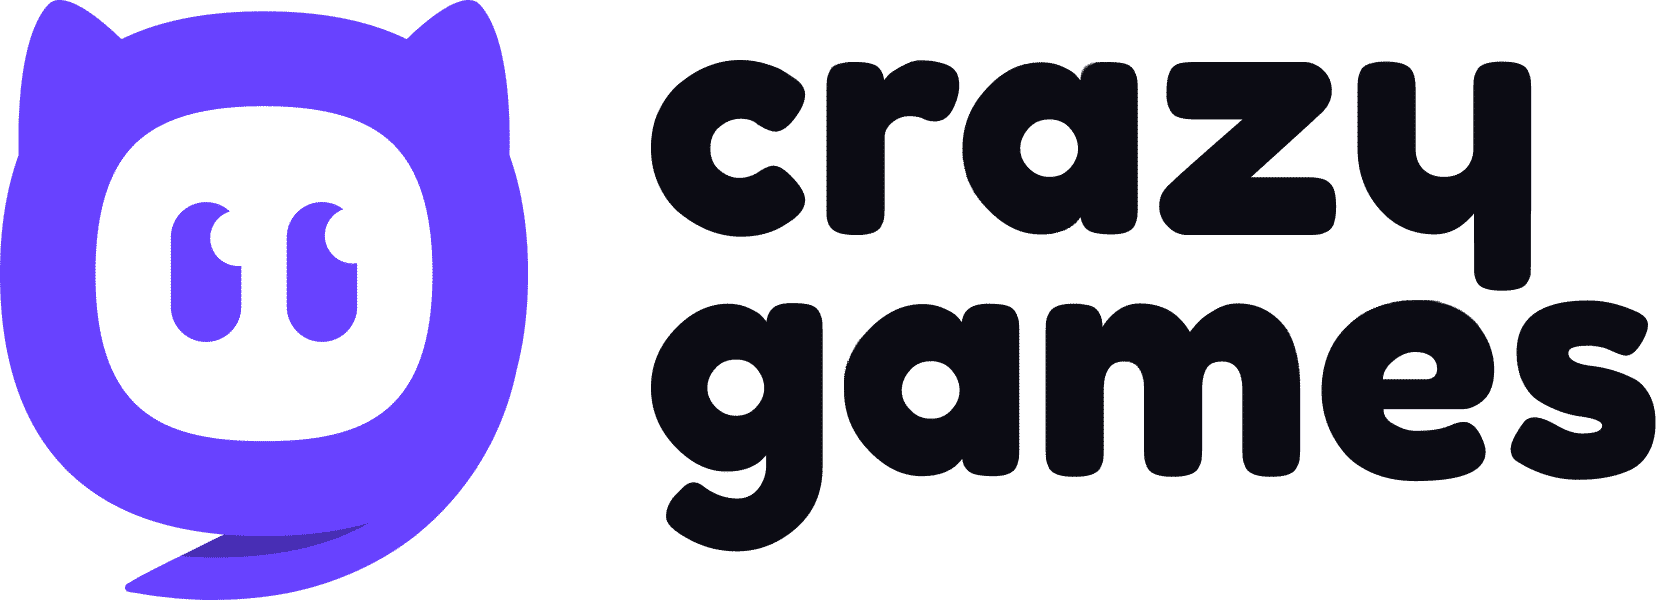 CrazyGames: Crazy Games Unblocked - CrazyGames.com